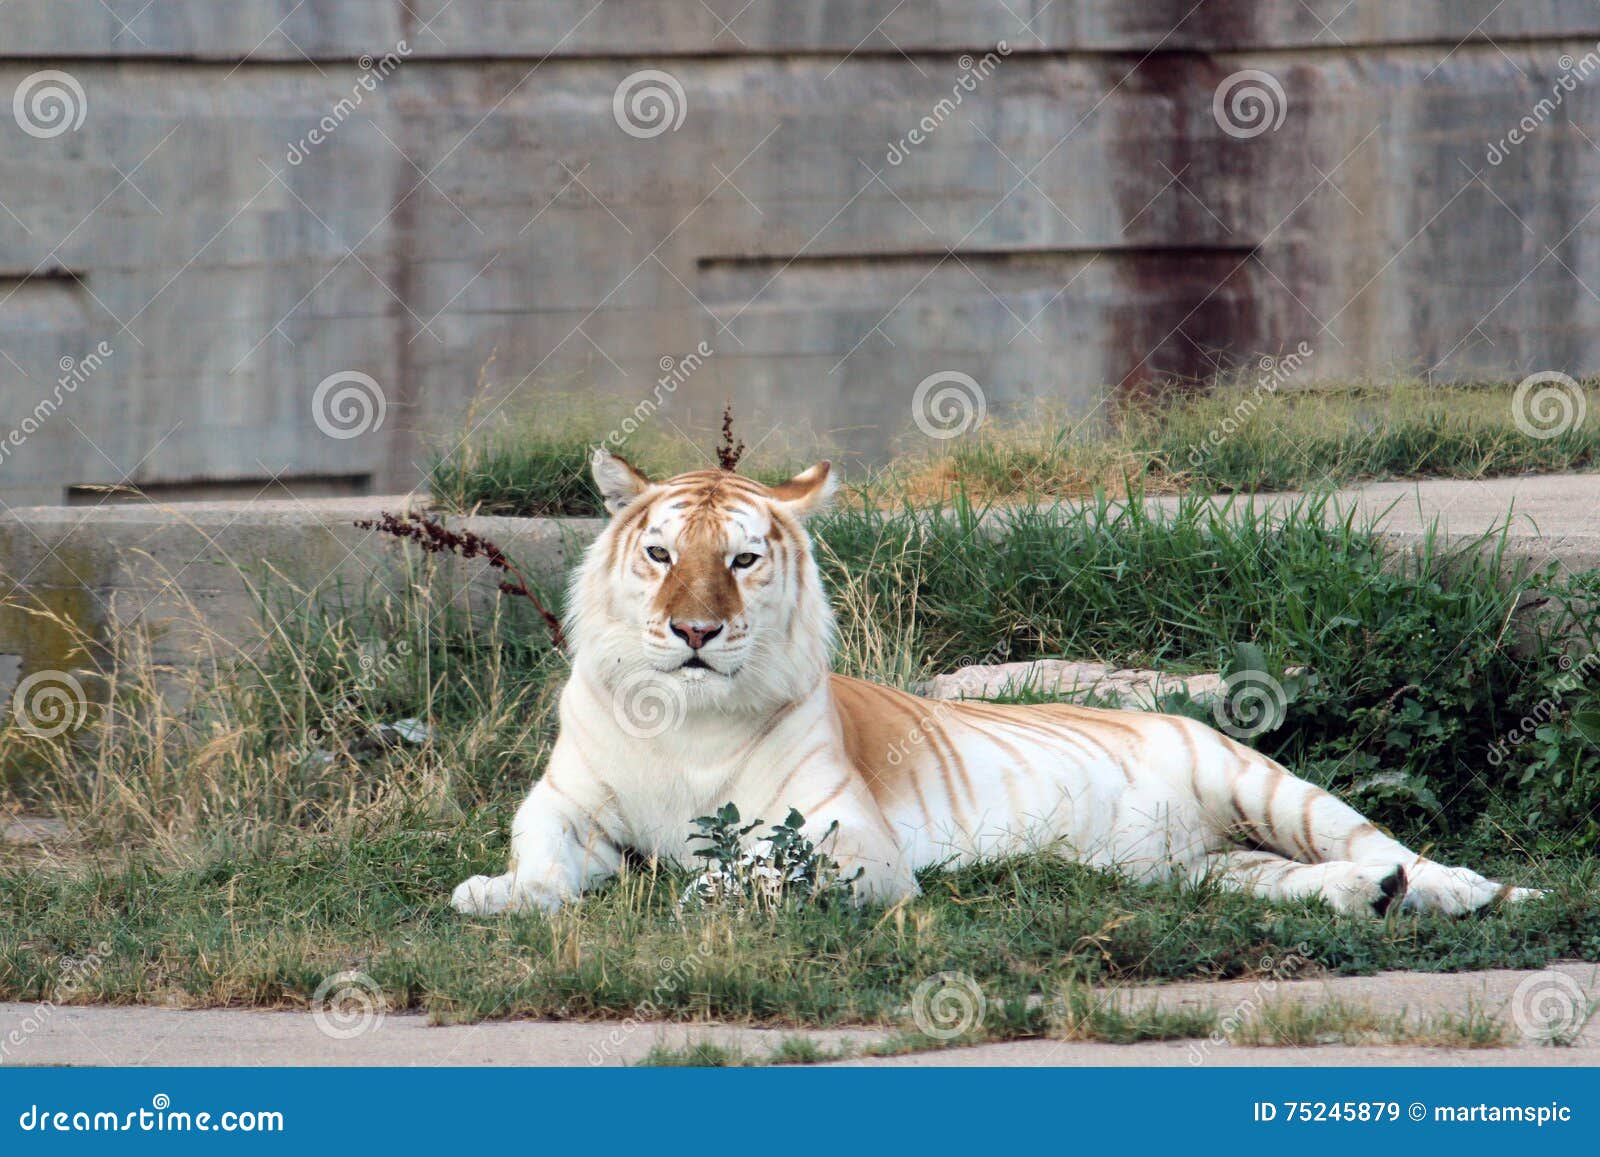 orange and white bengal tiger